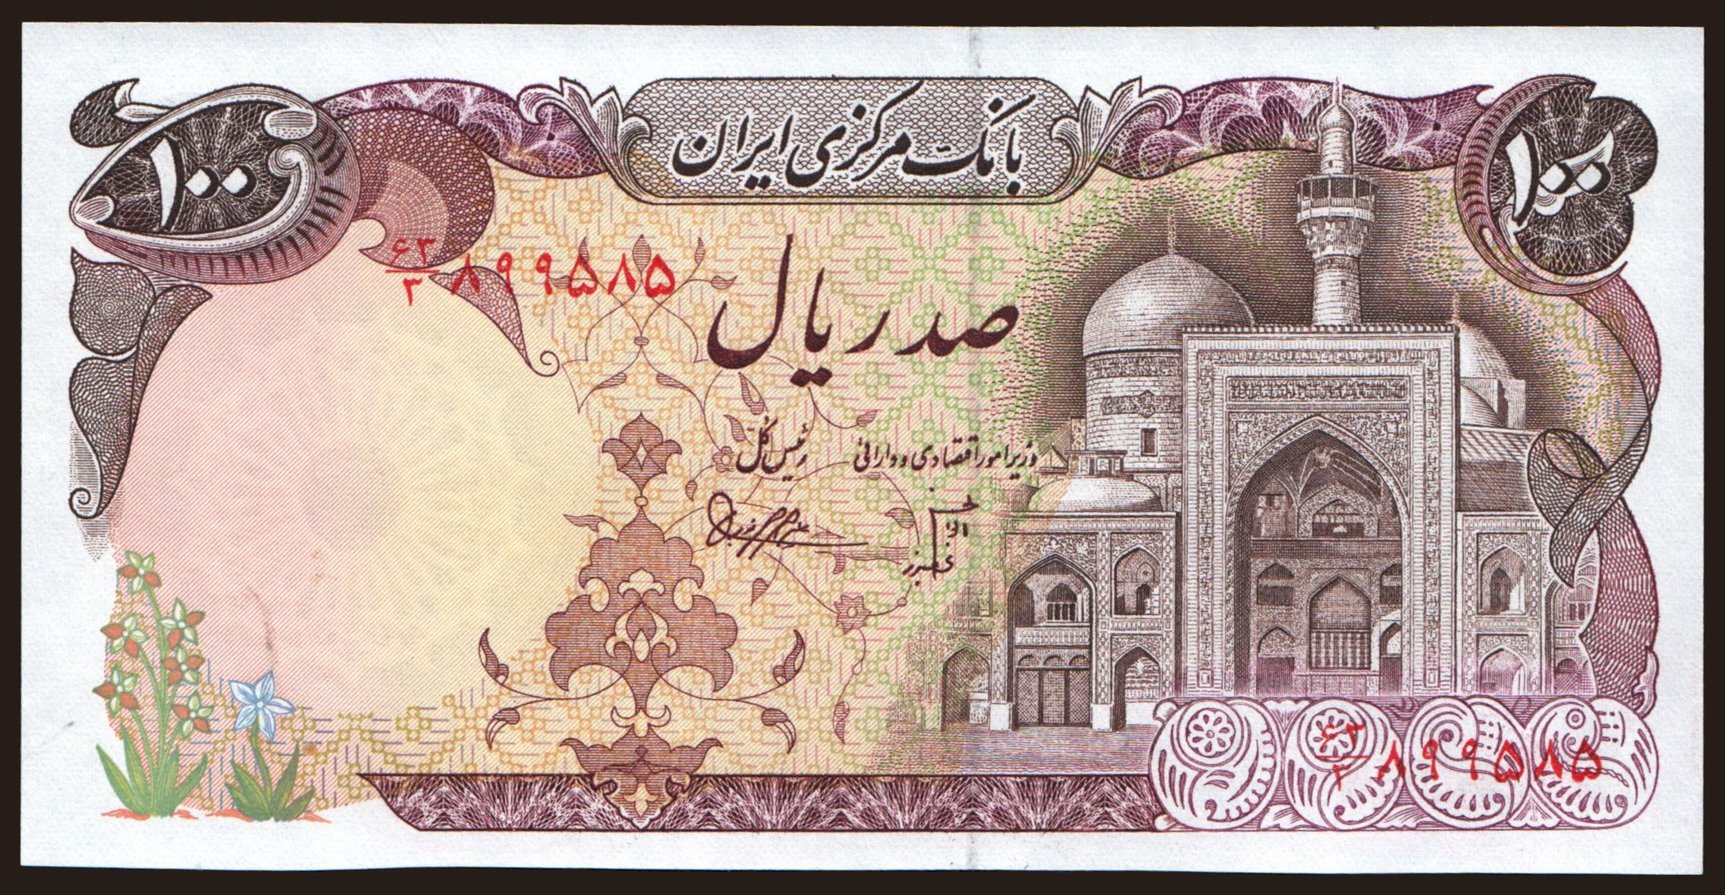 100 rials, 1981